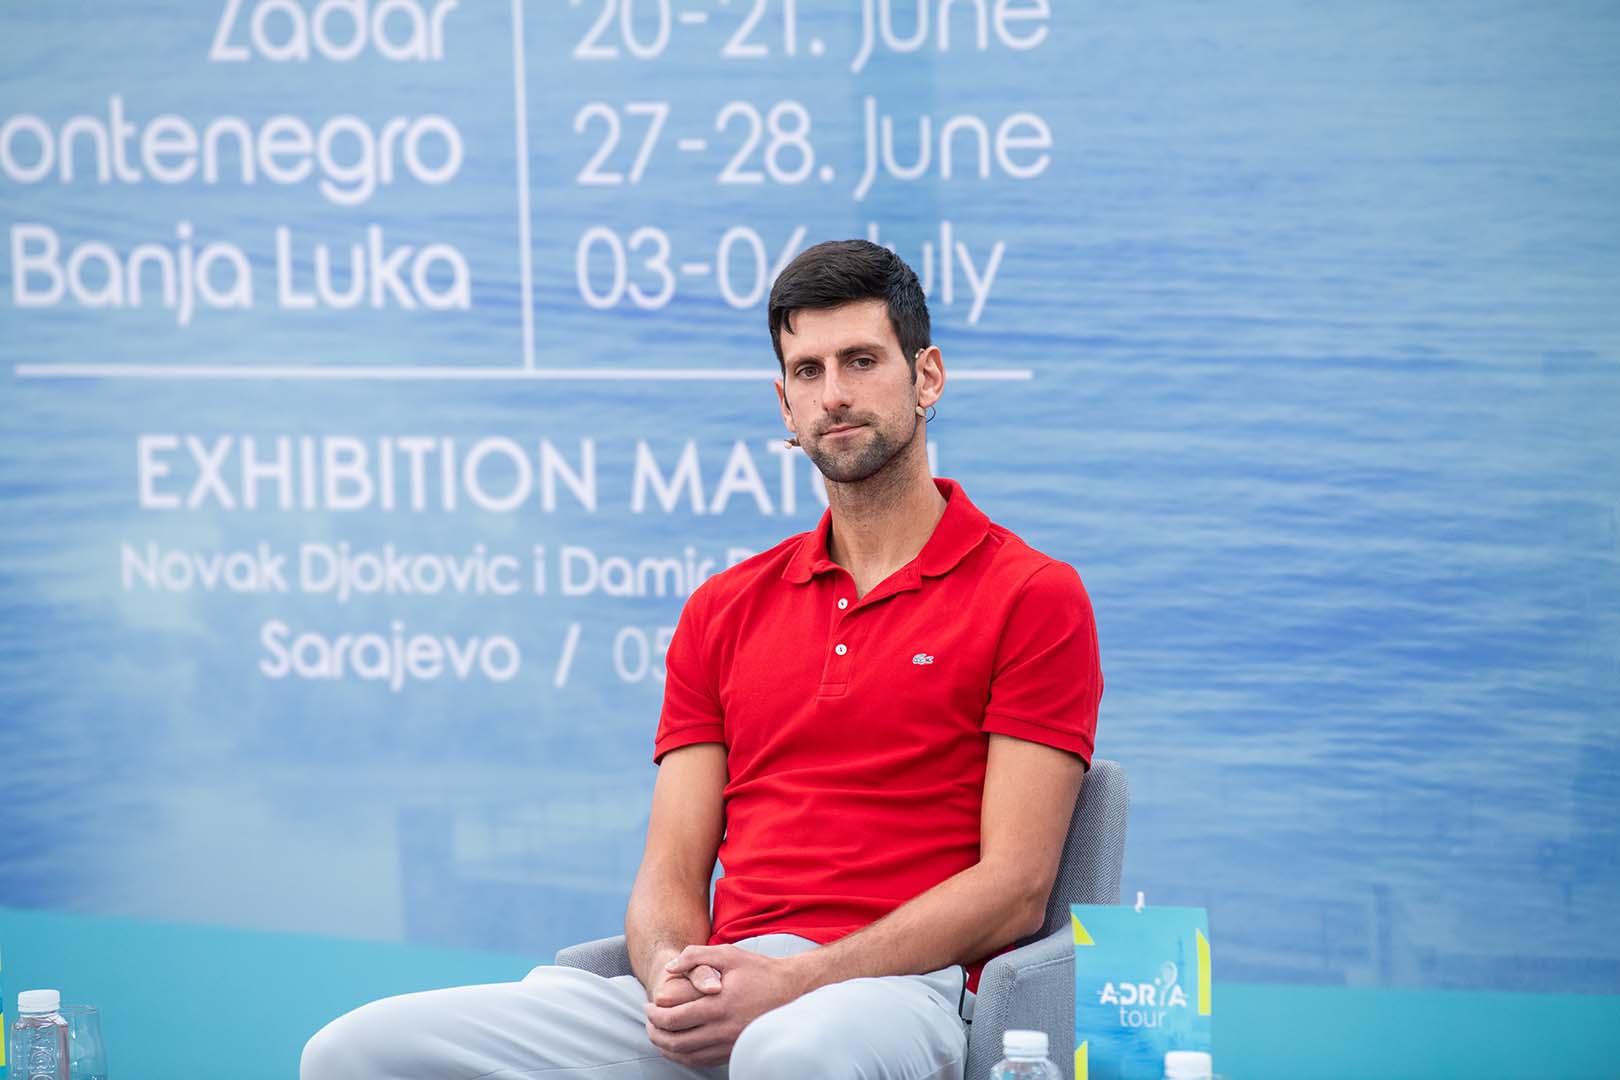 Novak Djokovic: 7 preguntas para entender la polémica por la participación del número uno del mundo en el Abierto de Australia5 min read